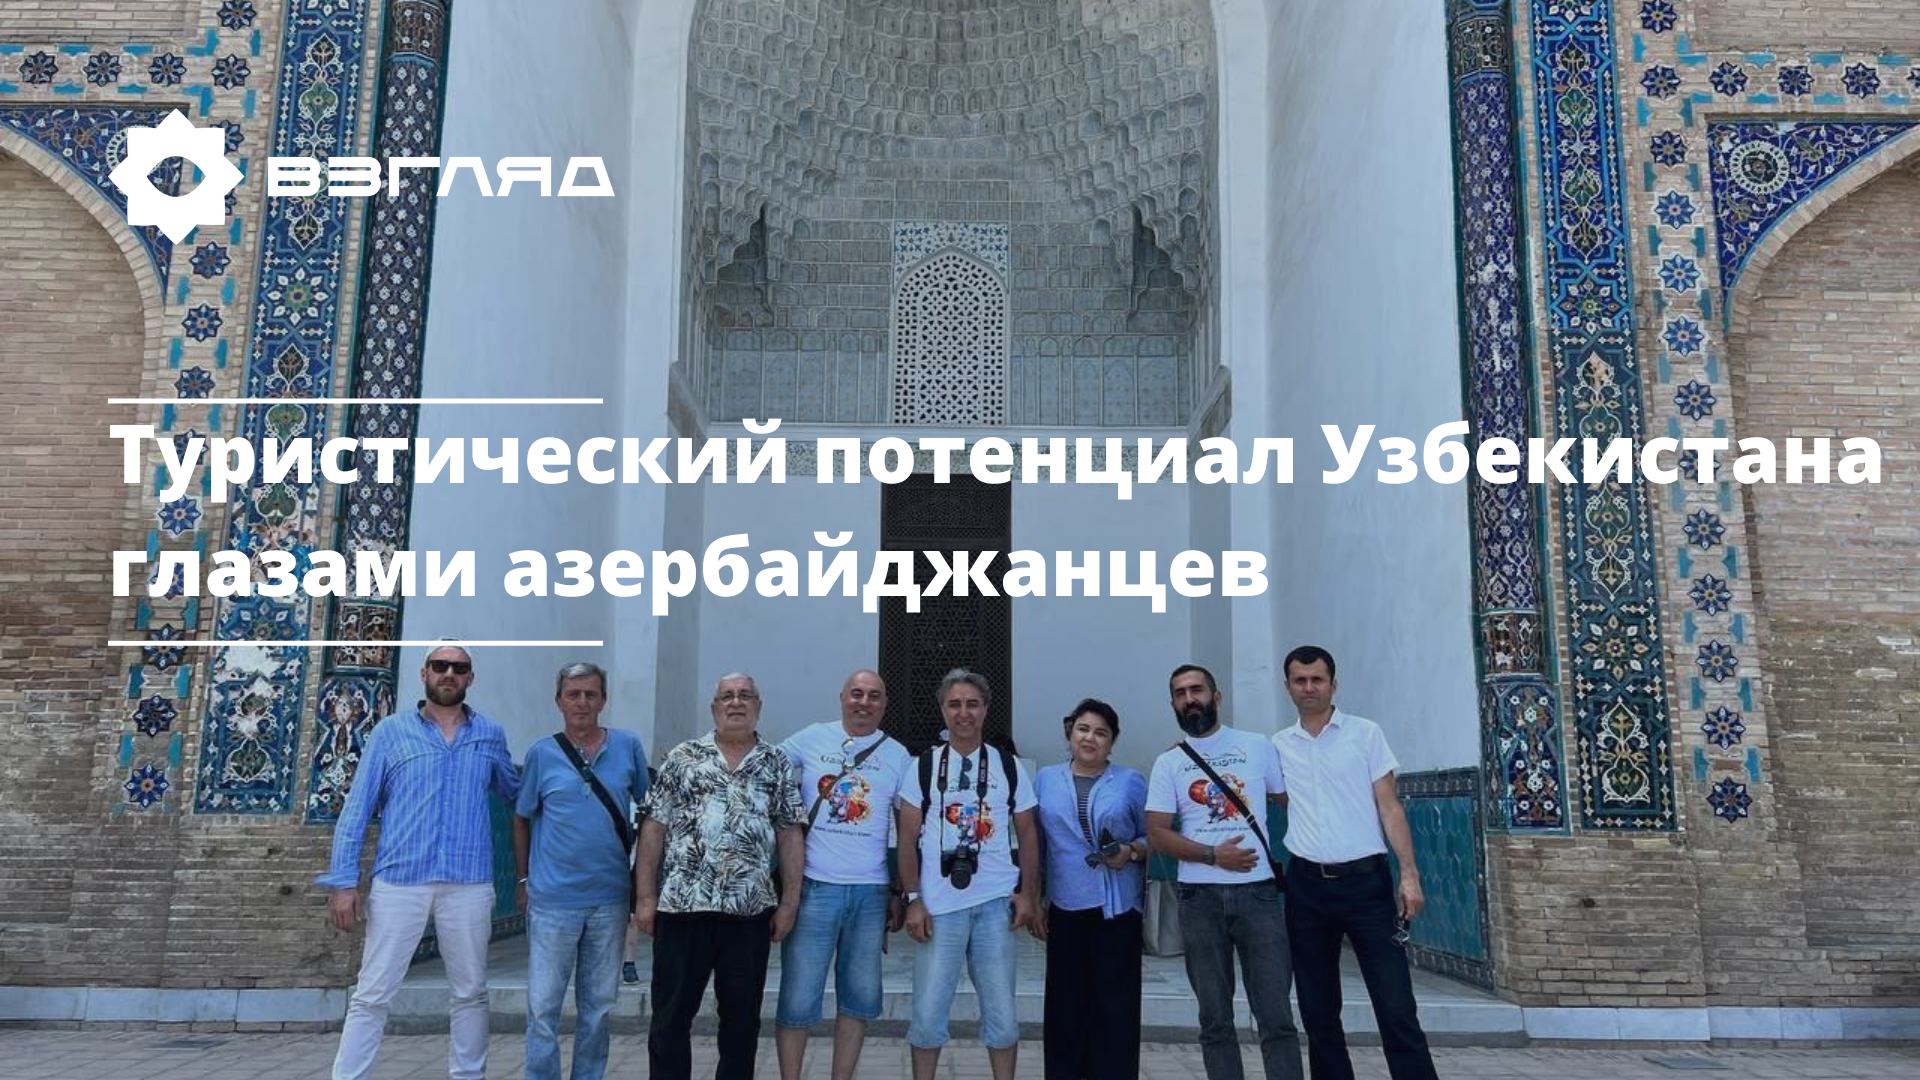 Гости из Азербайджана приехали в Узбекистан для оценки туристического потенциала страны